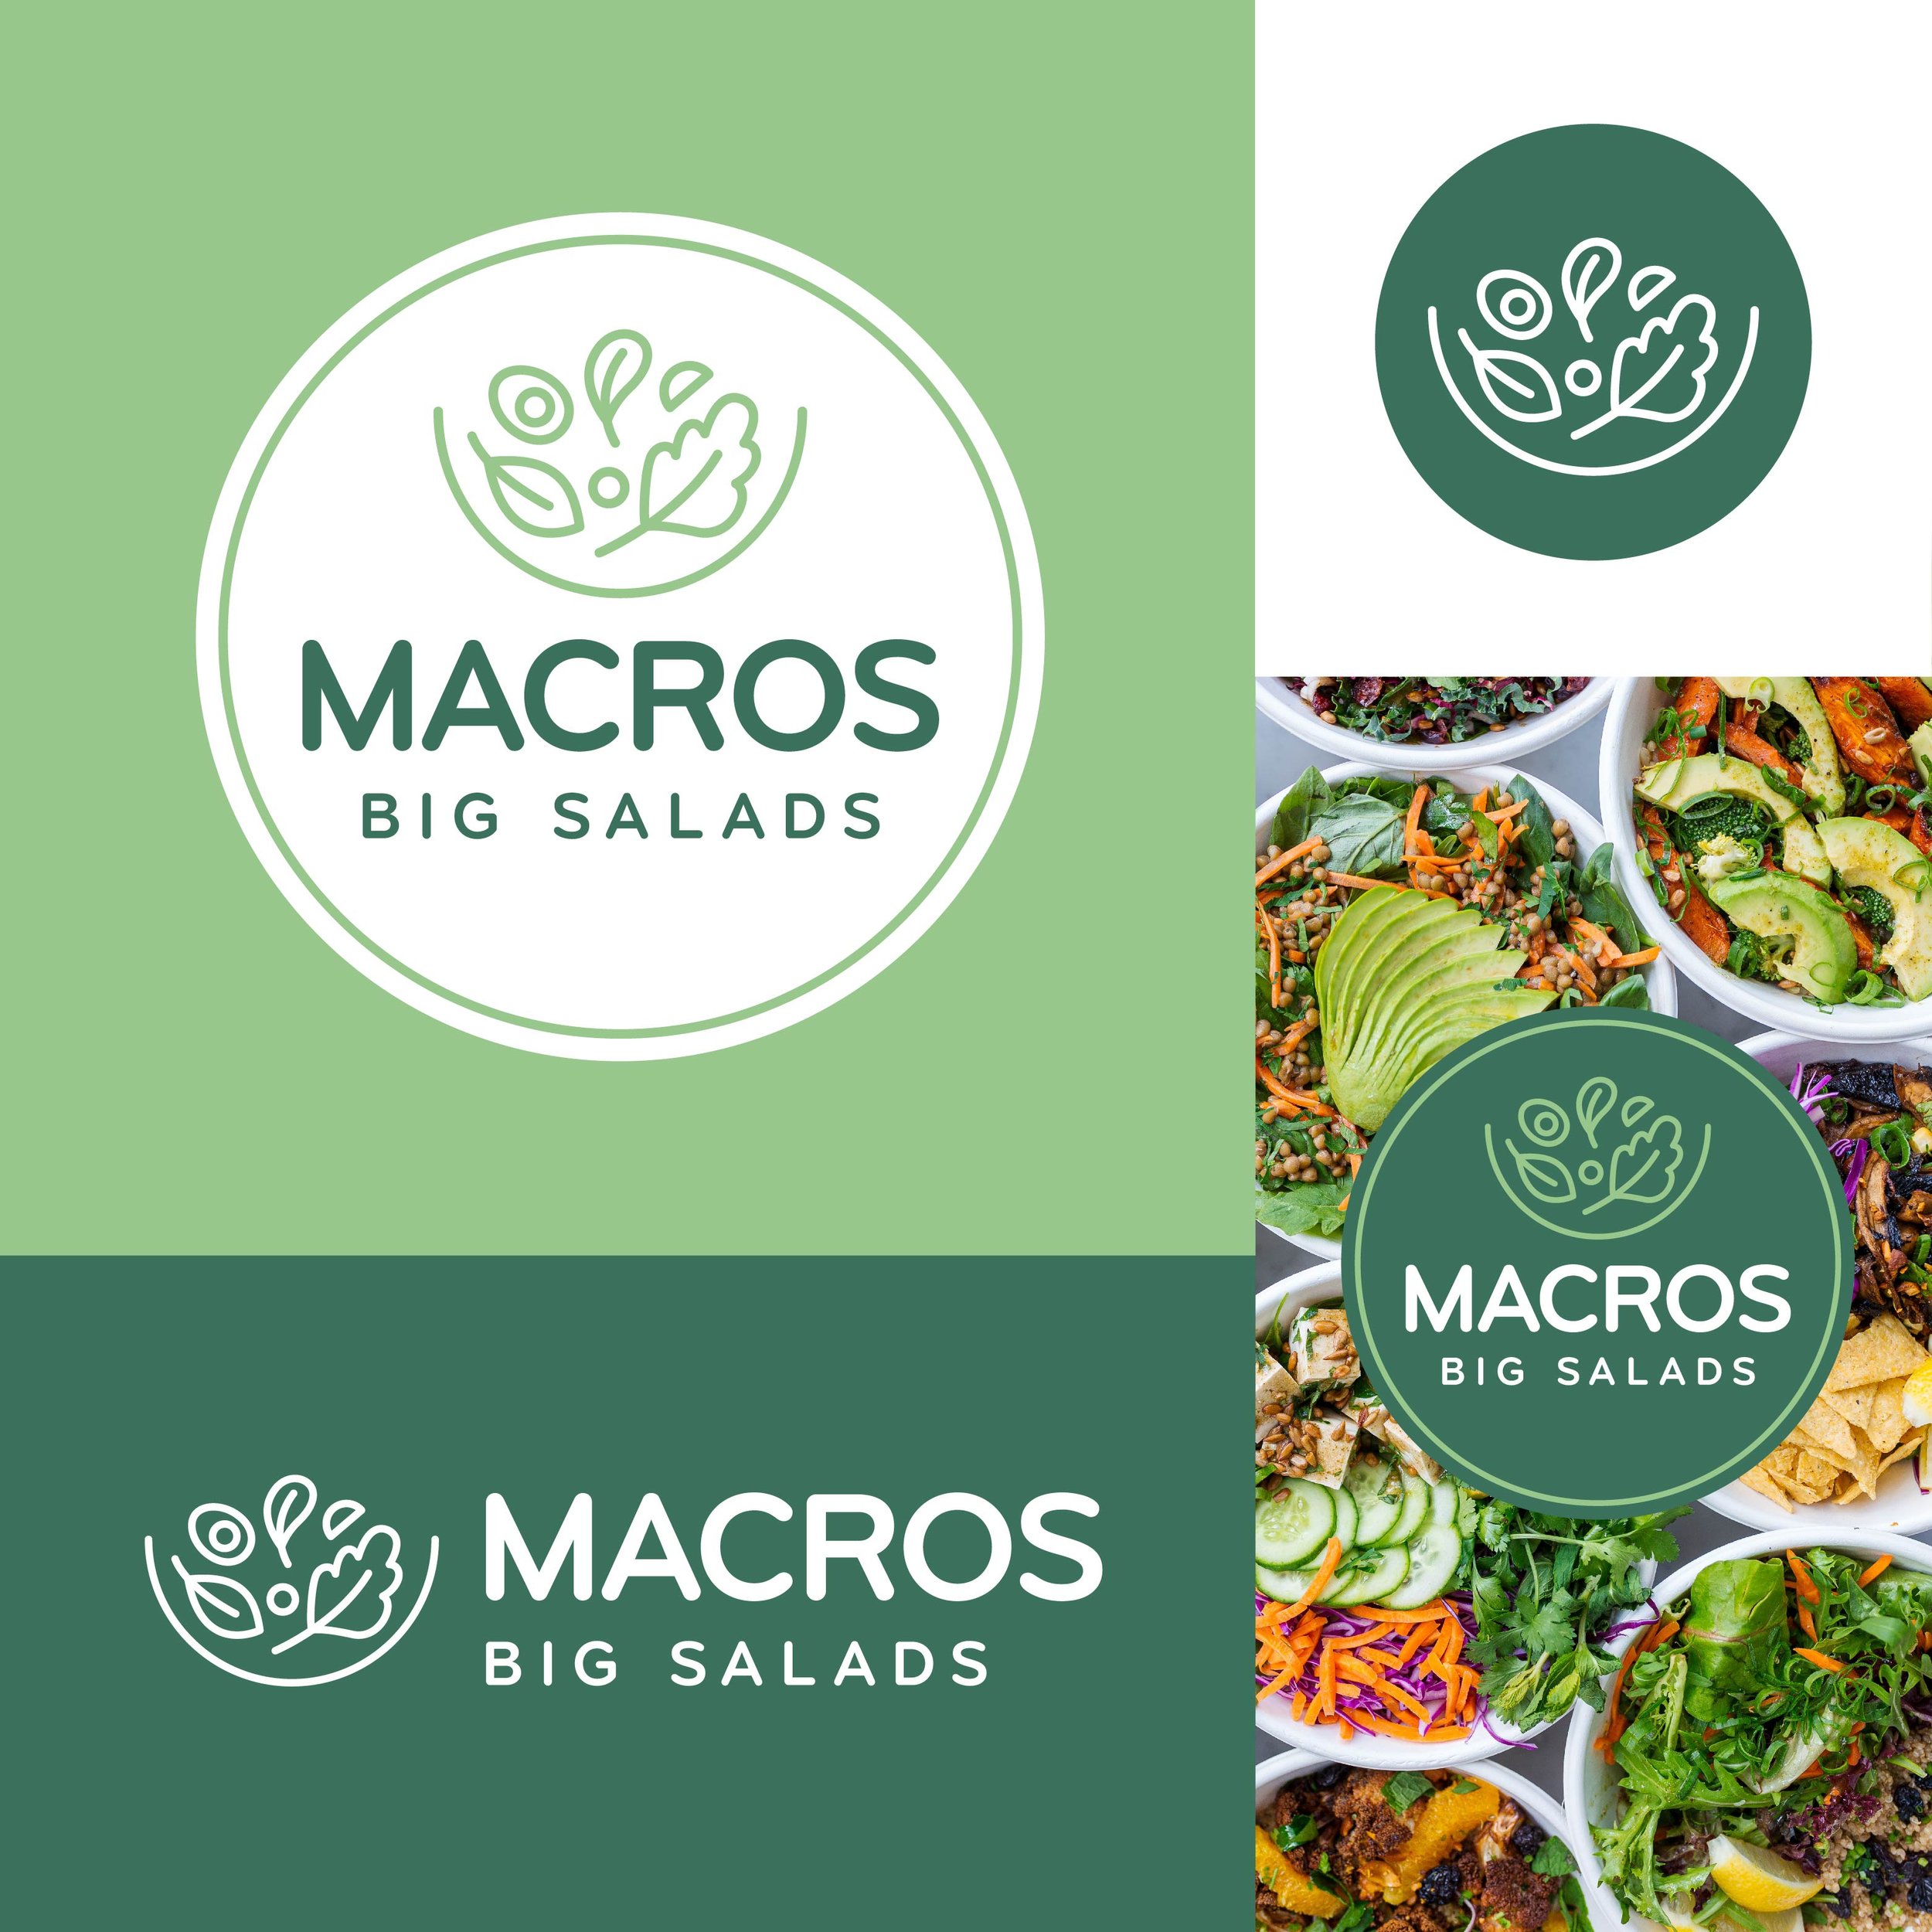 Macros Big Salads Logos